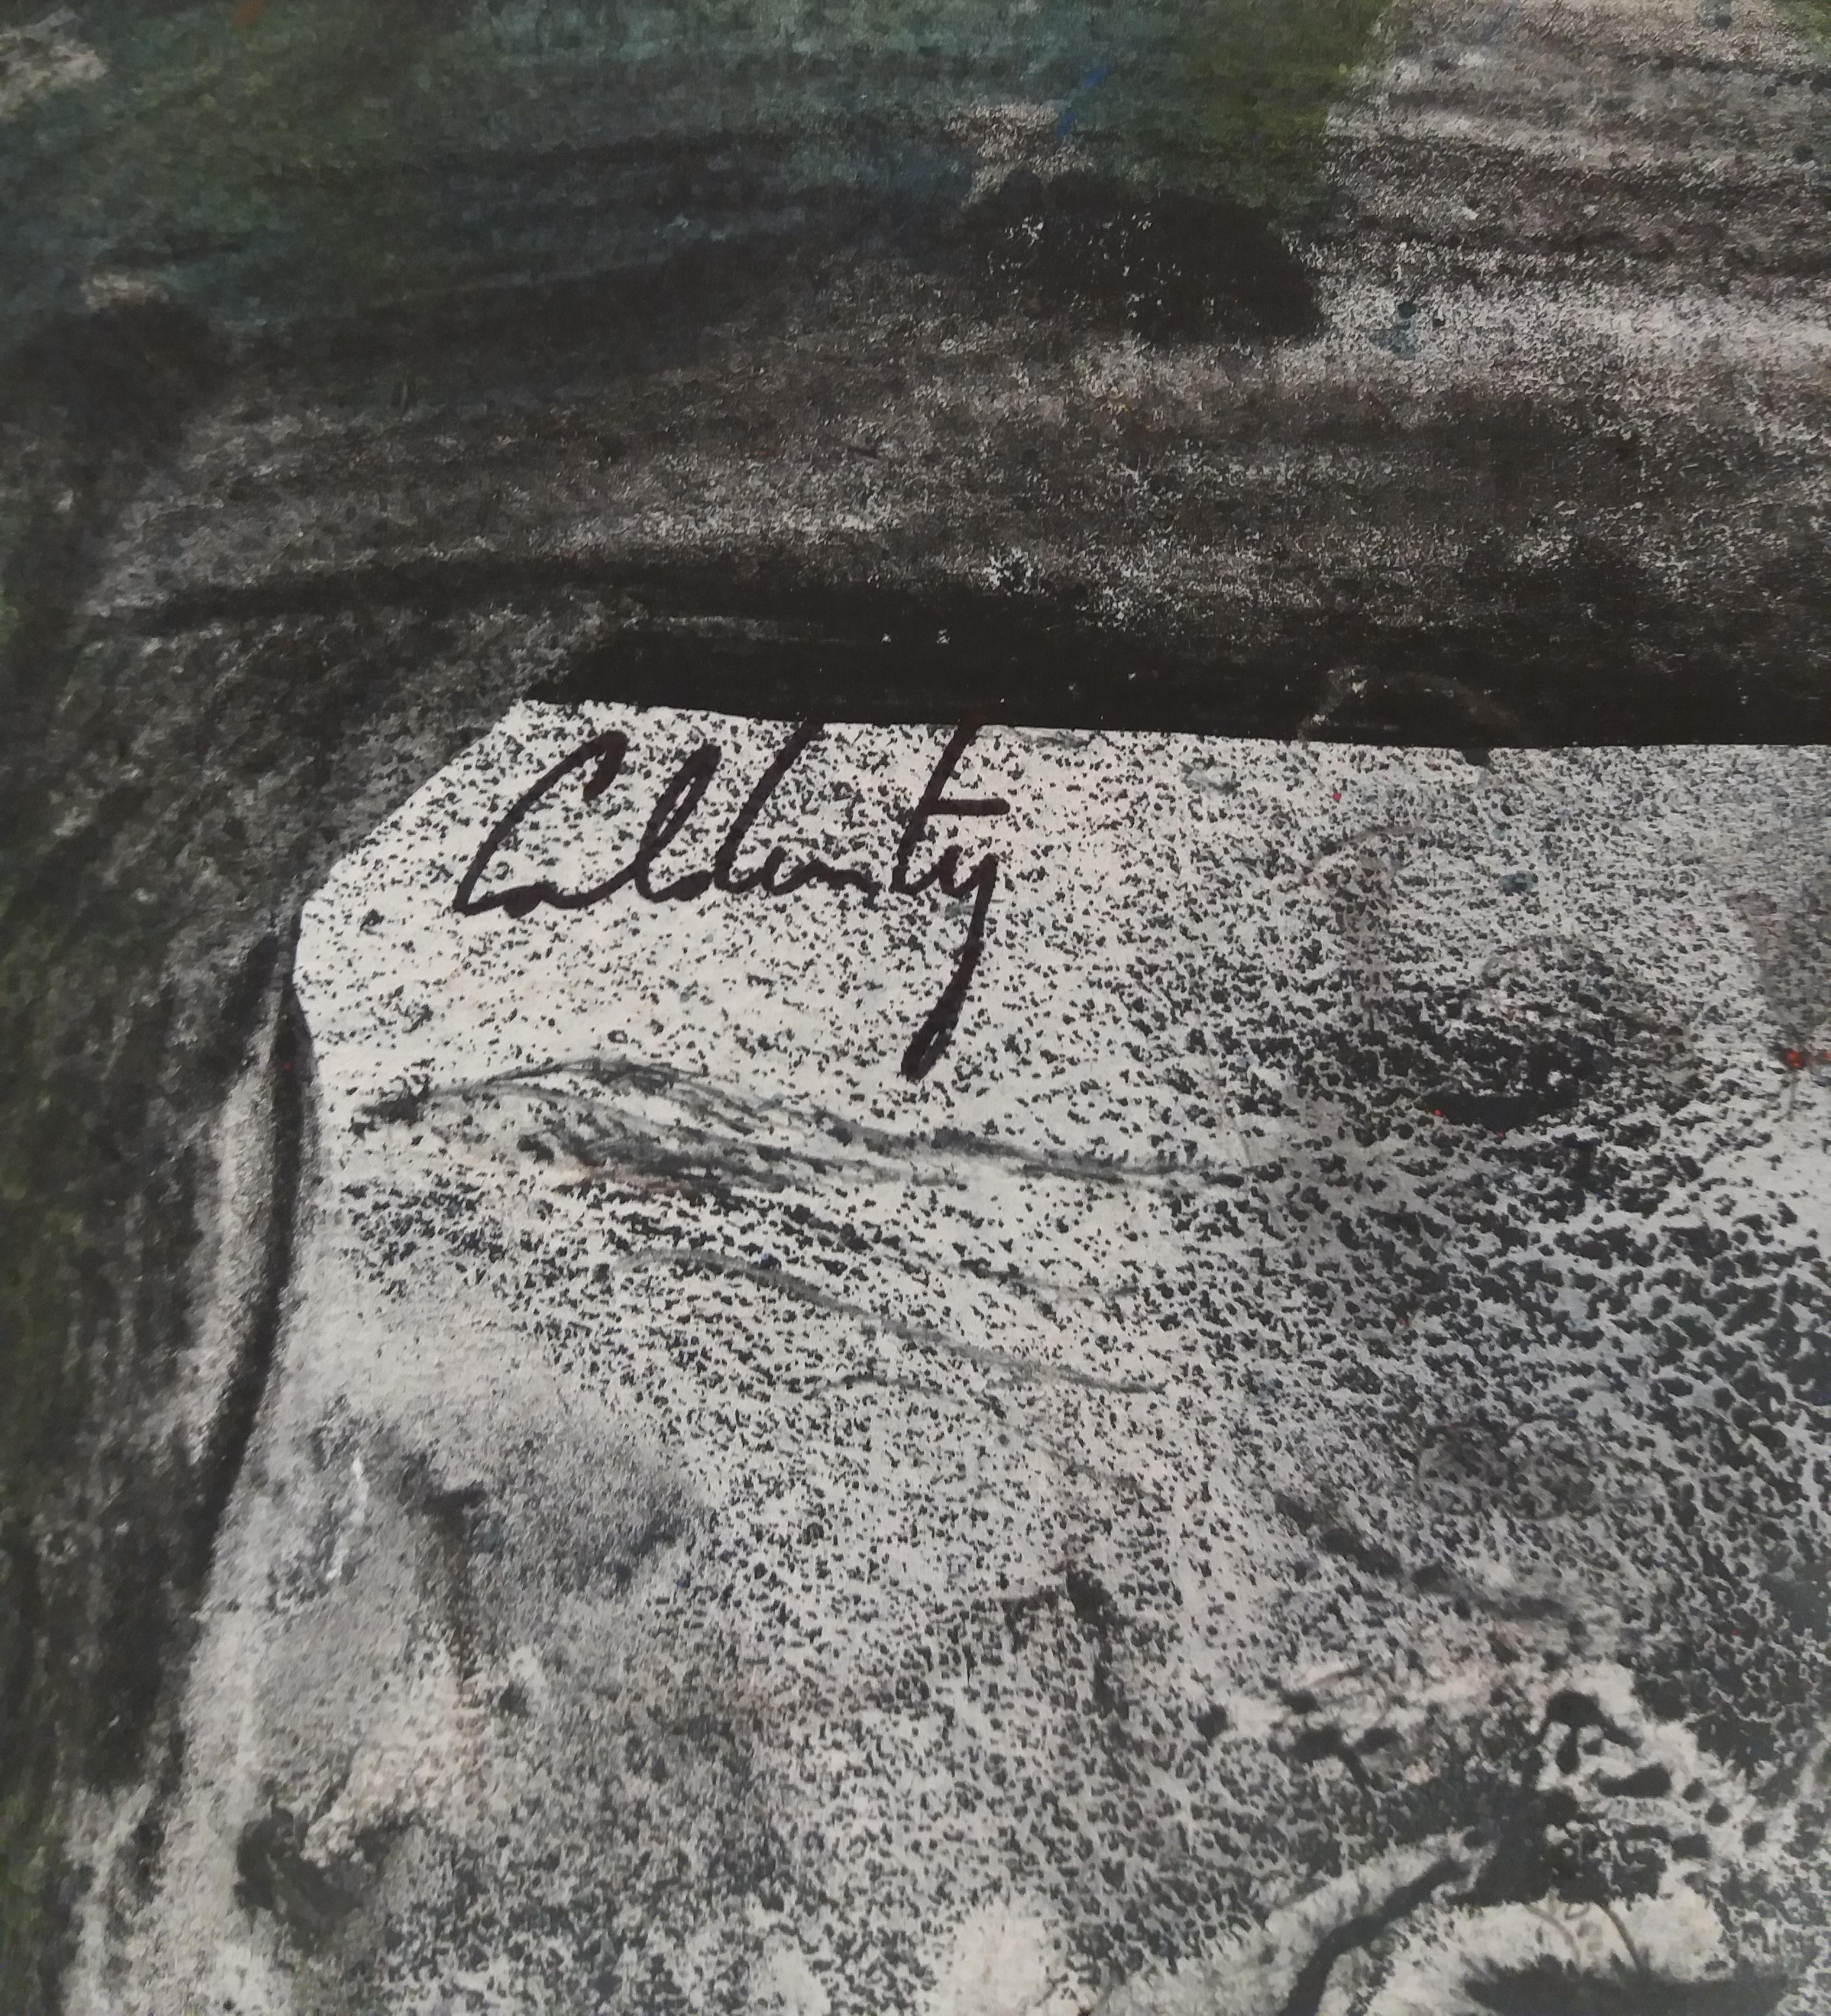 original neo-expressionistisches Acrylgemälde
zeitgenössische Werke des mallorquinischen Künstlers Toni CALDENTEY
Malerei auf Papier
Perfekter Zustand
zeitgenössische Werke des mallorquinischen Künstlers Toni CALDENTEY

CALDENTEY, Toni -